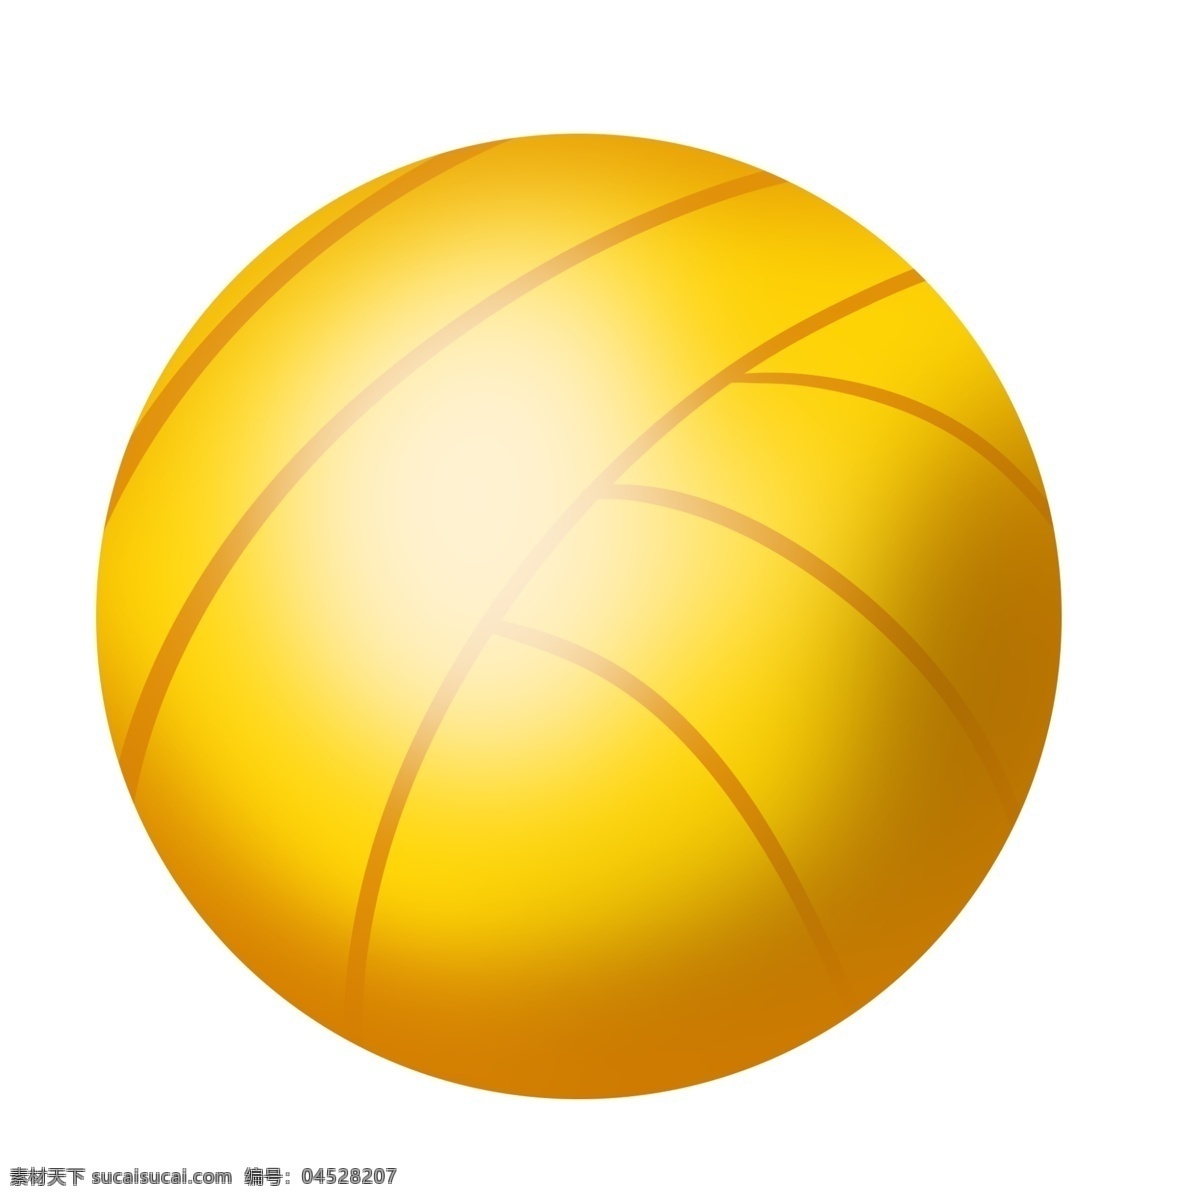 黄色 沙滩 球 玩具 黄色球 沙滩球 球类